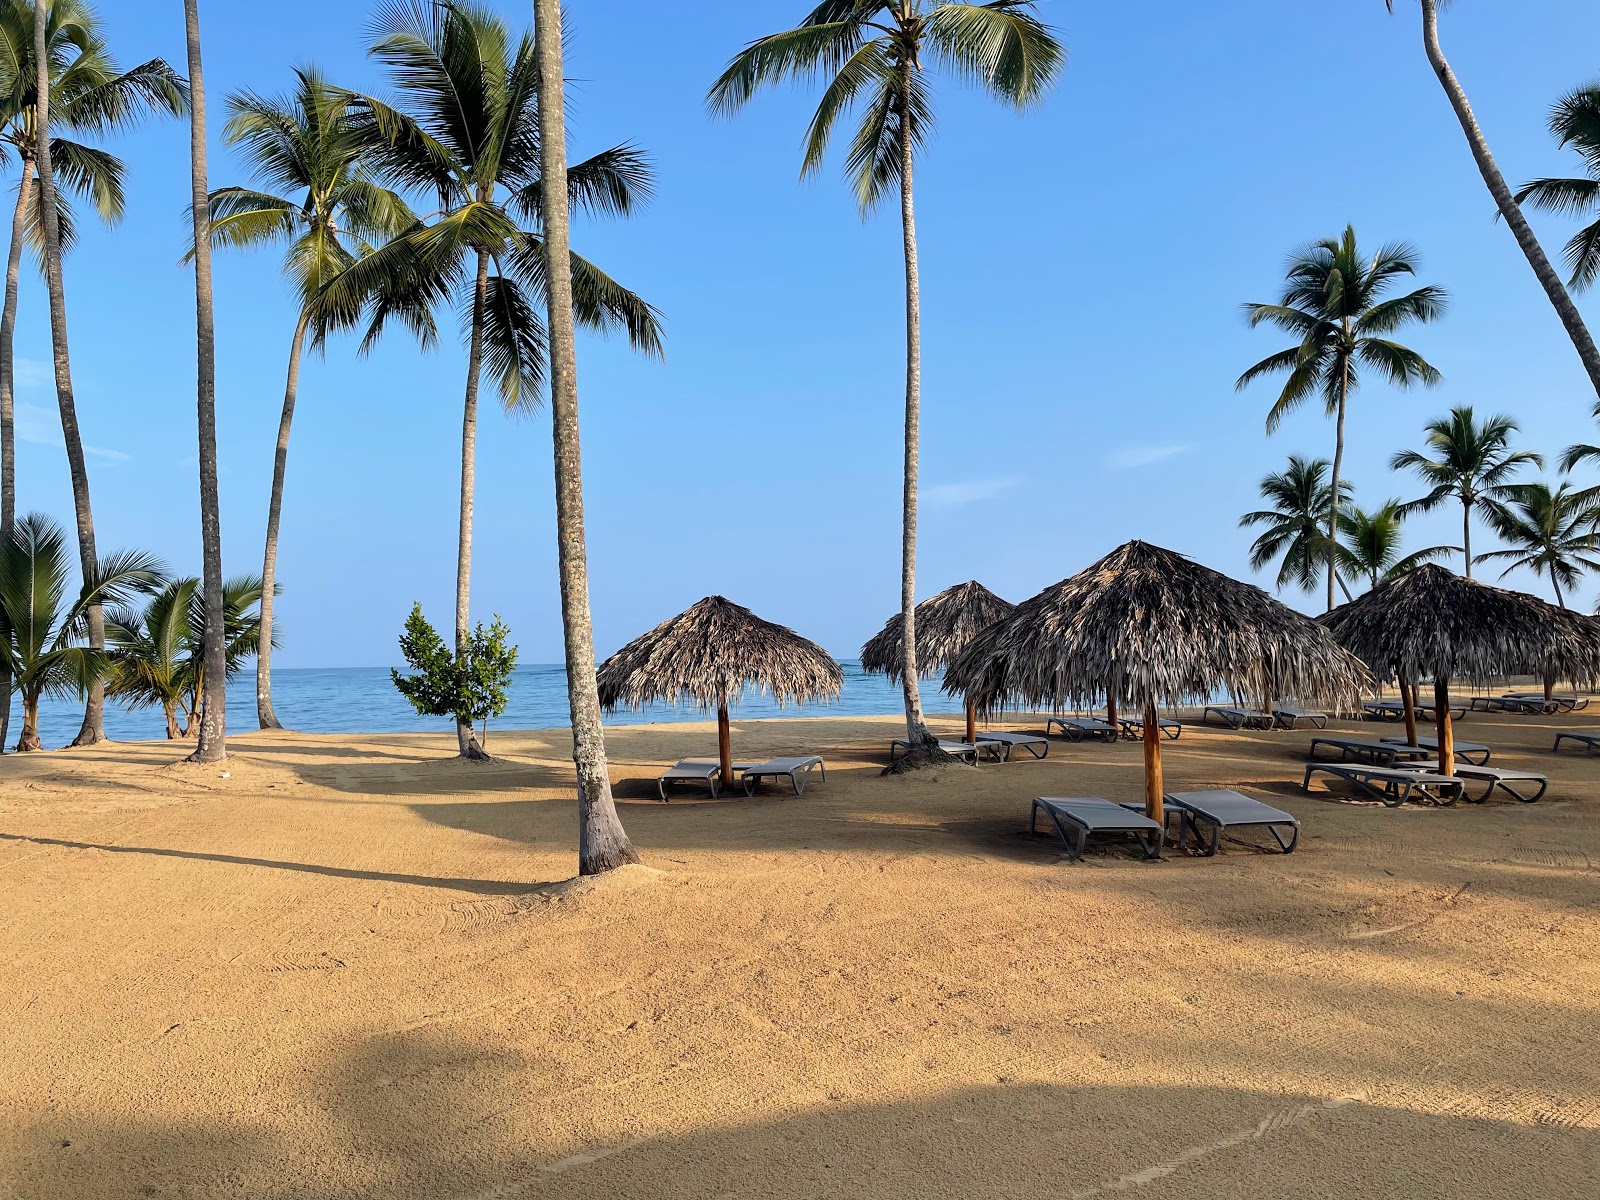 Esmeralda Plajı'in fotoğrafı kısmen otel alanı